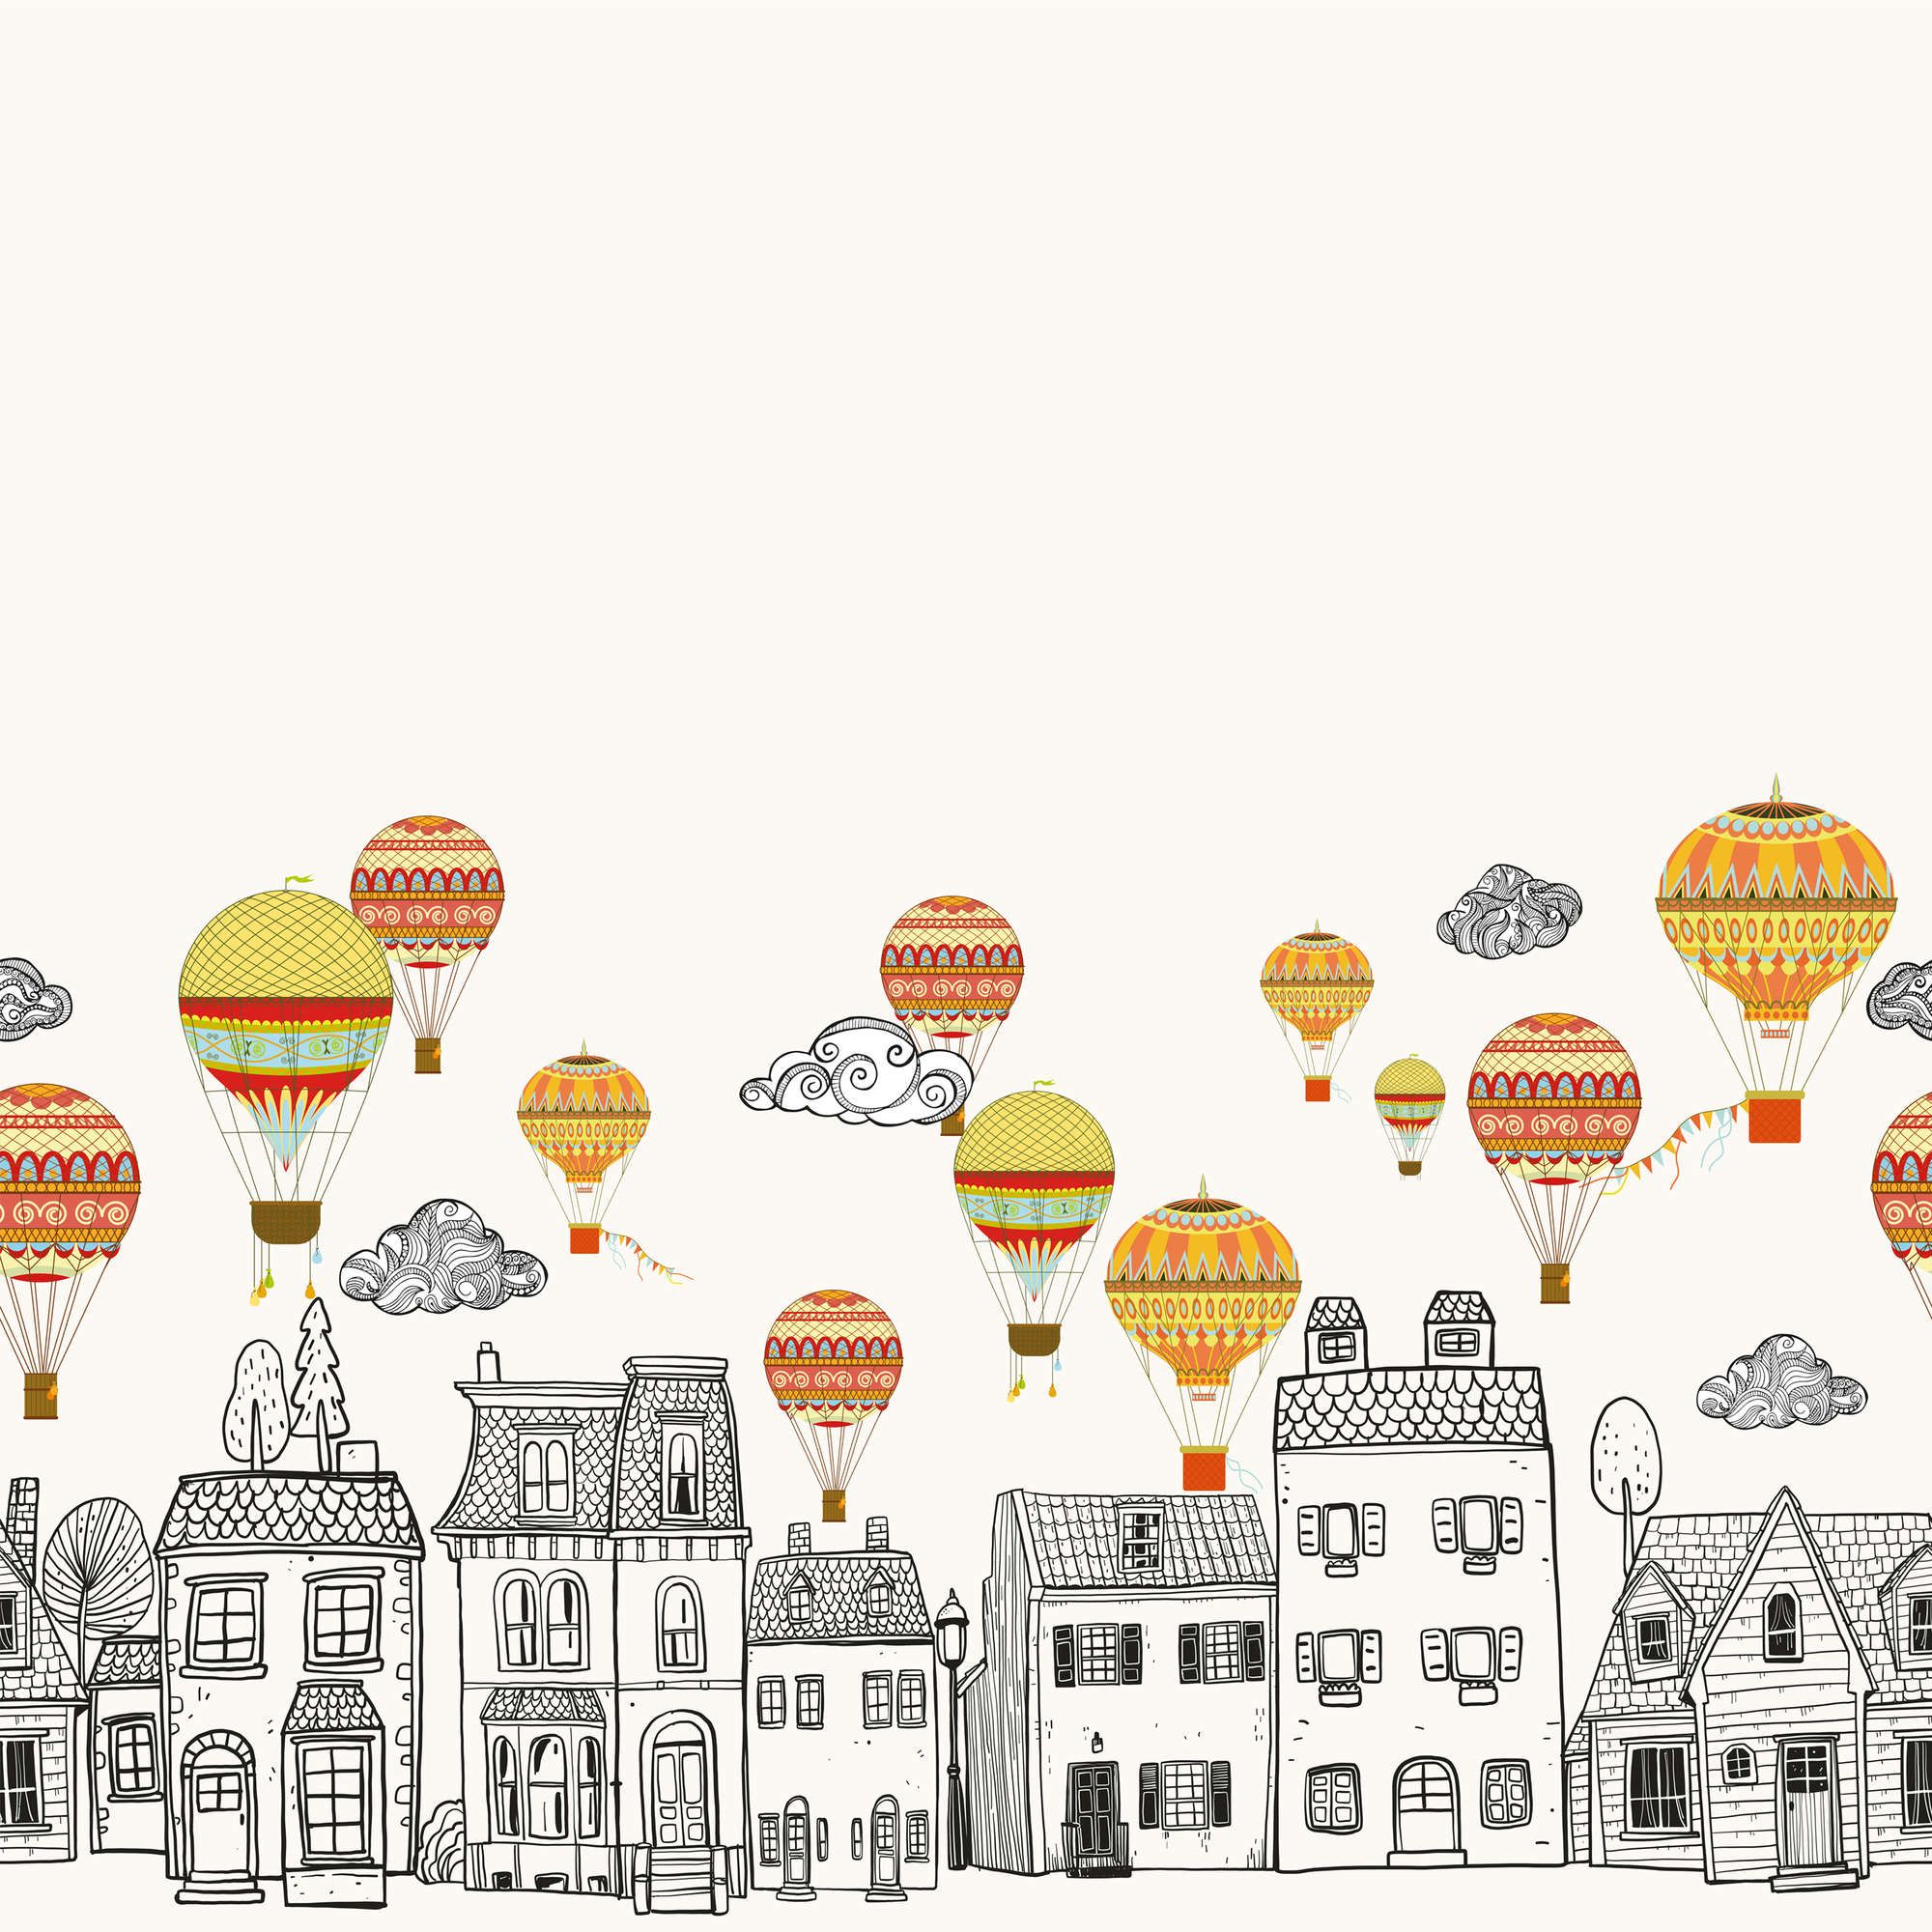             Fototapete Kleinstadt mit Heißluftballoons – Glattes & perlmutt-schimmerndes Vlies
        